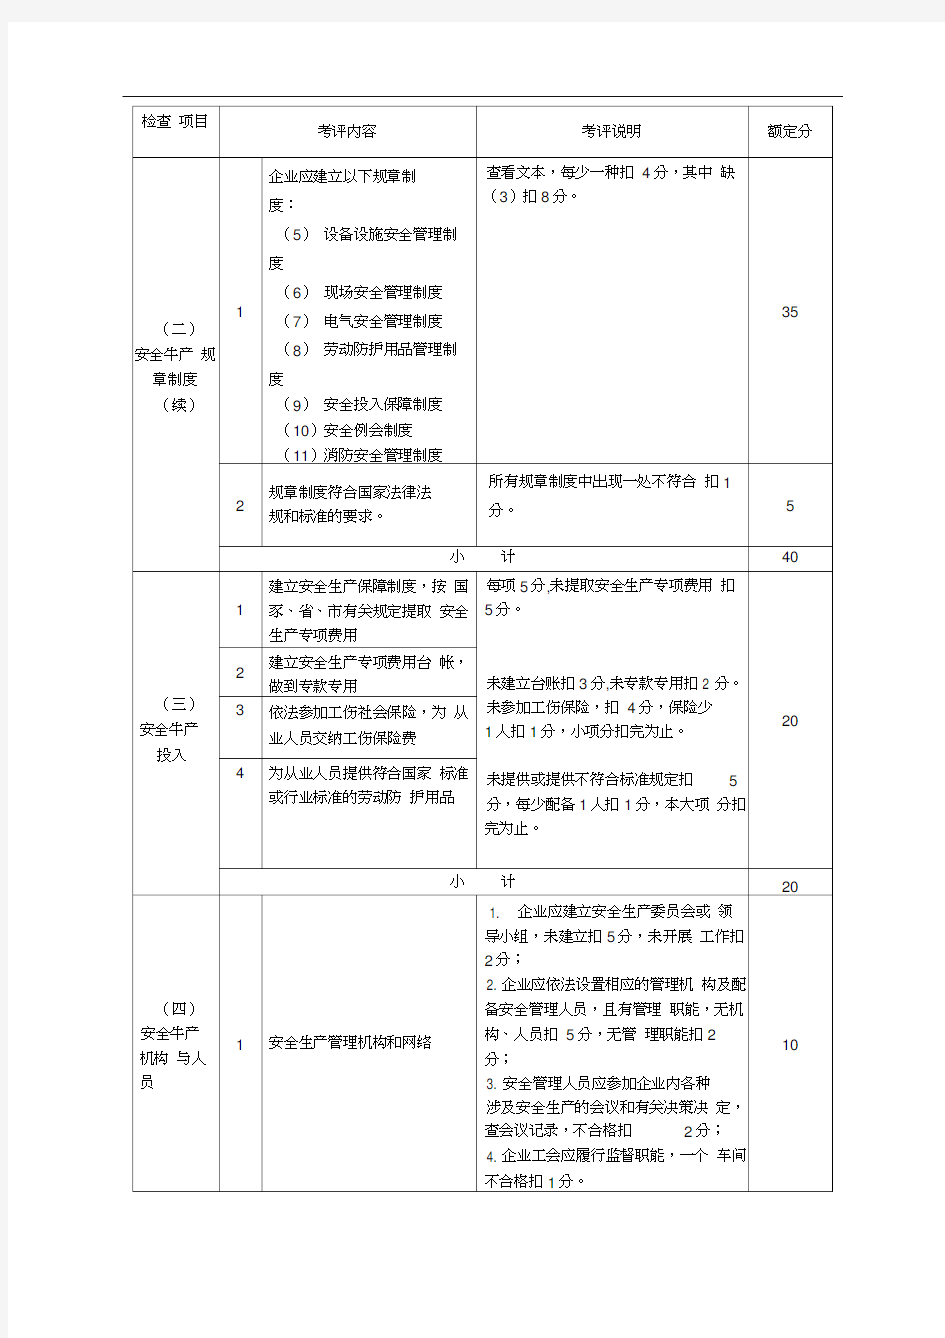 (安全生产)浙江省机械制造行业安全生产标准化企业考核评定表